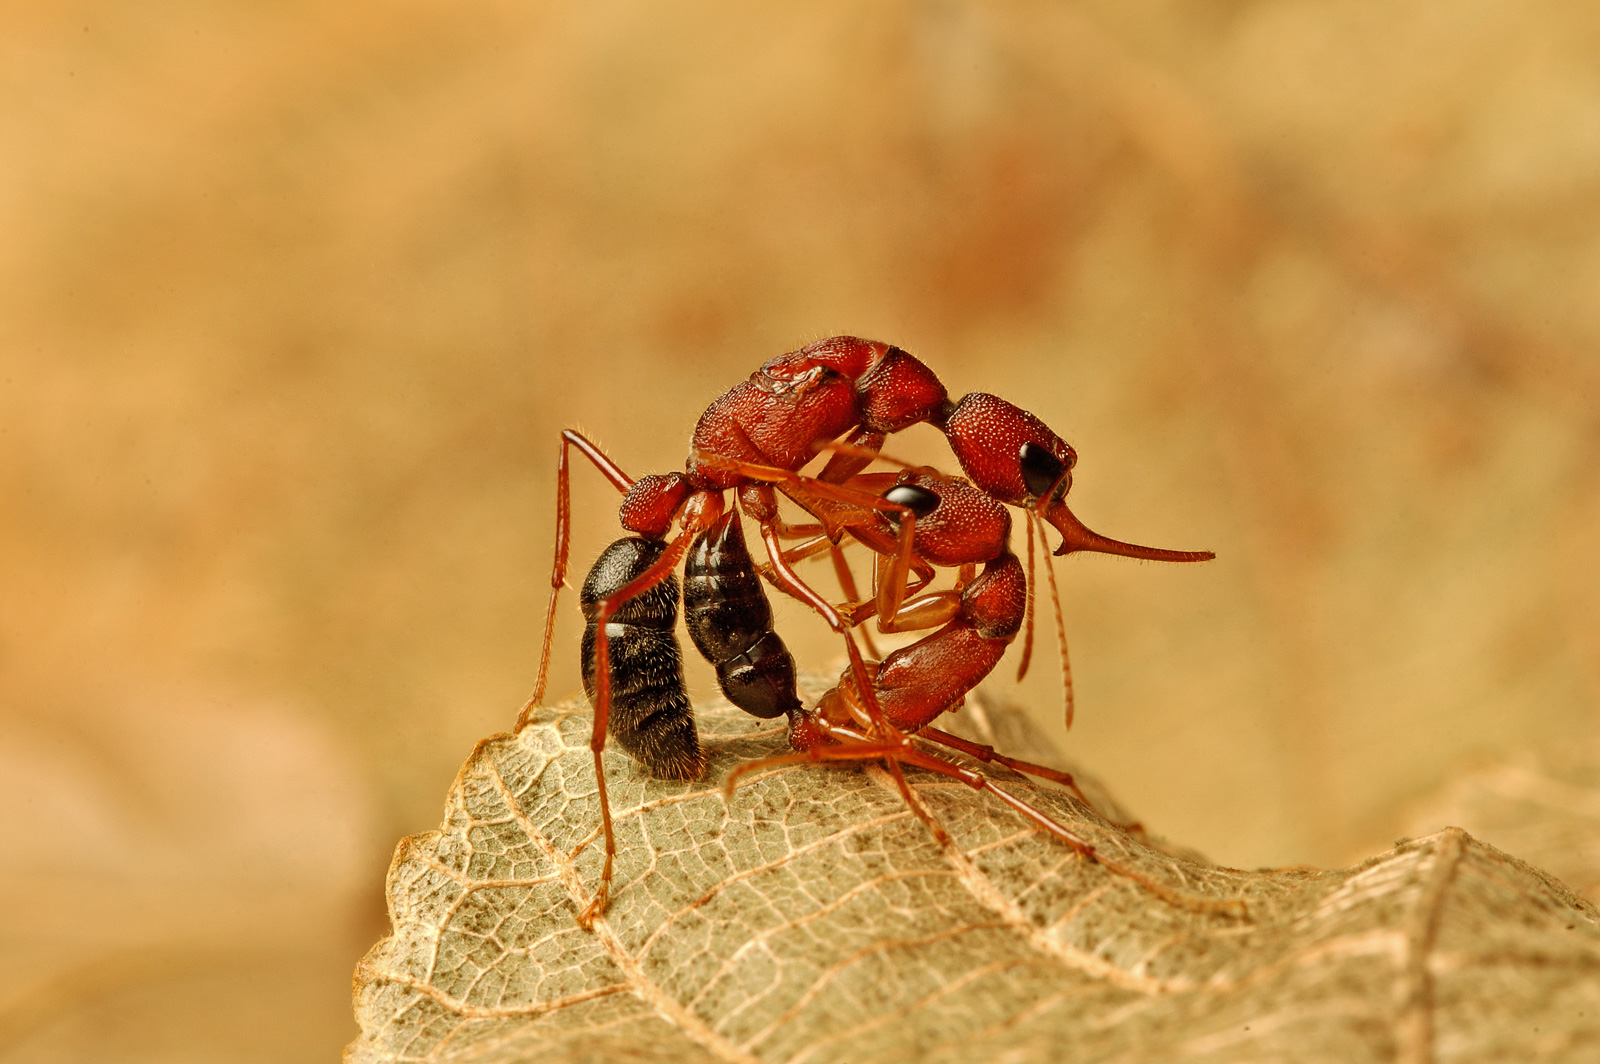 Королева или раб: у прыгающих муравьев социальные роли зависят от единственного белка.Вокруг Света. Украина